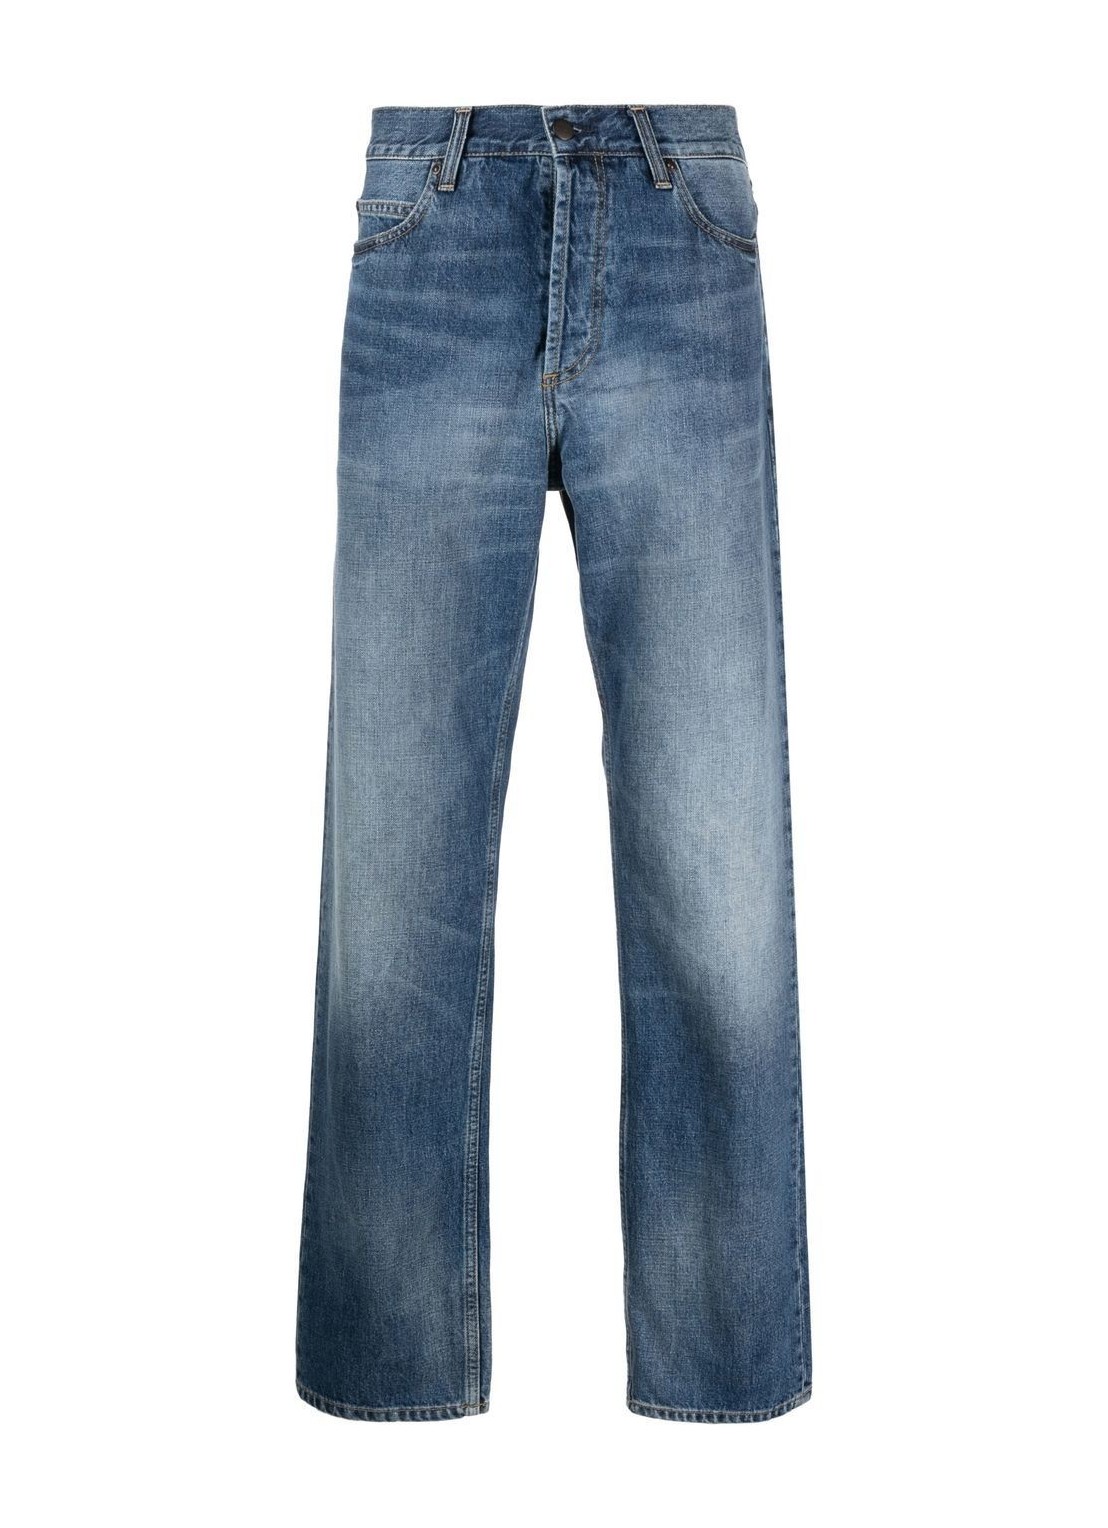 Pantalon jeans carhartt marlow pant - i023029 01wj talla 30
 